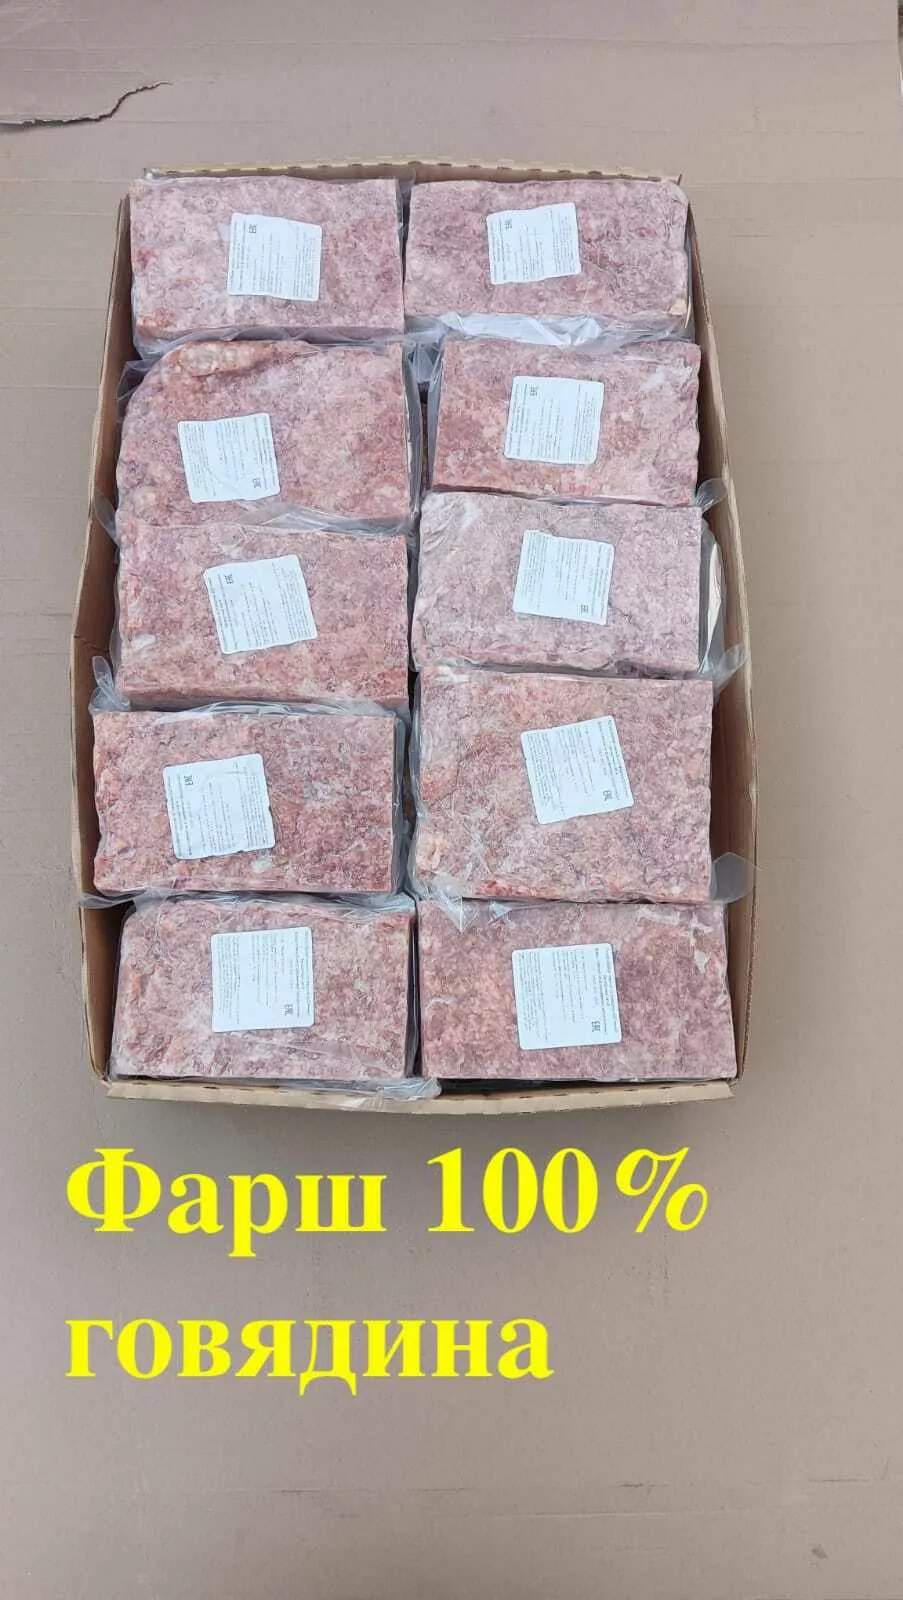 фарш говяжий халяль от 329 руб. в Москве и Московской области 6